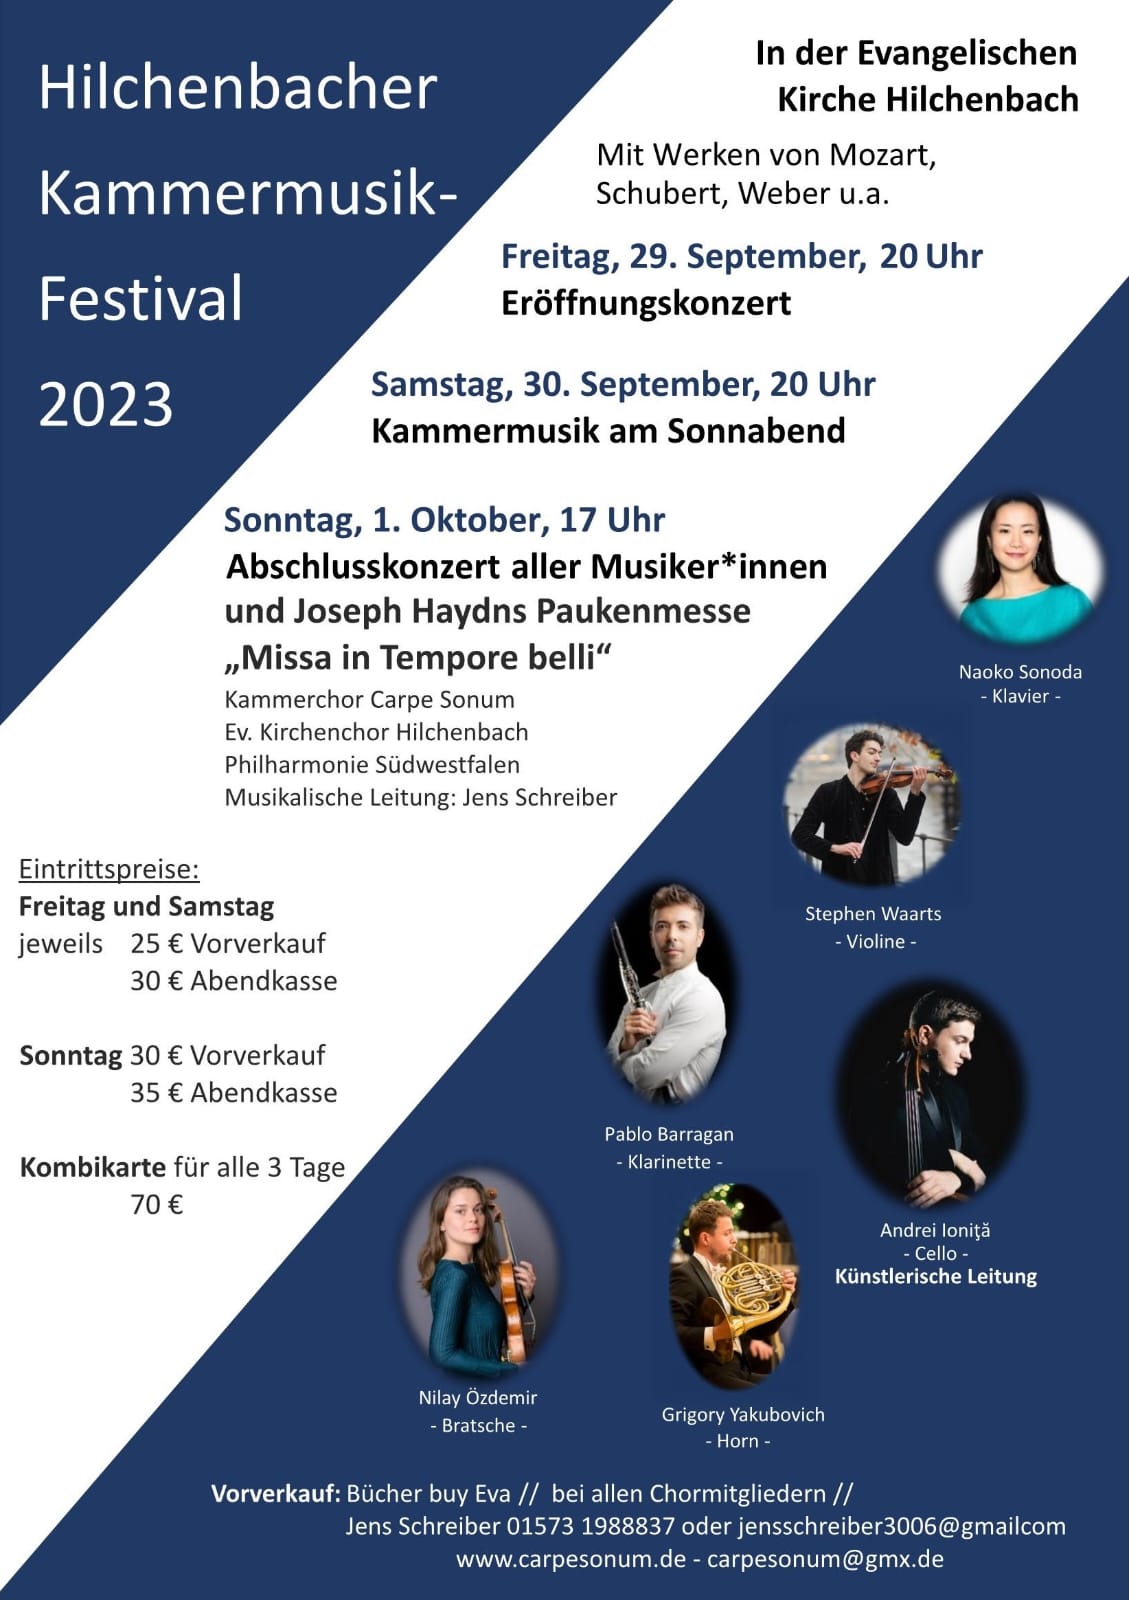 Kammermusik-Festival 2023